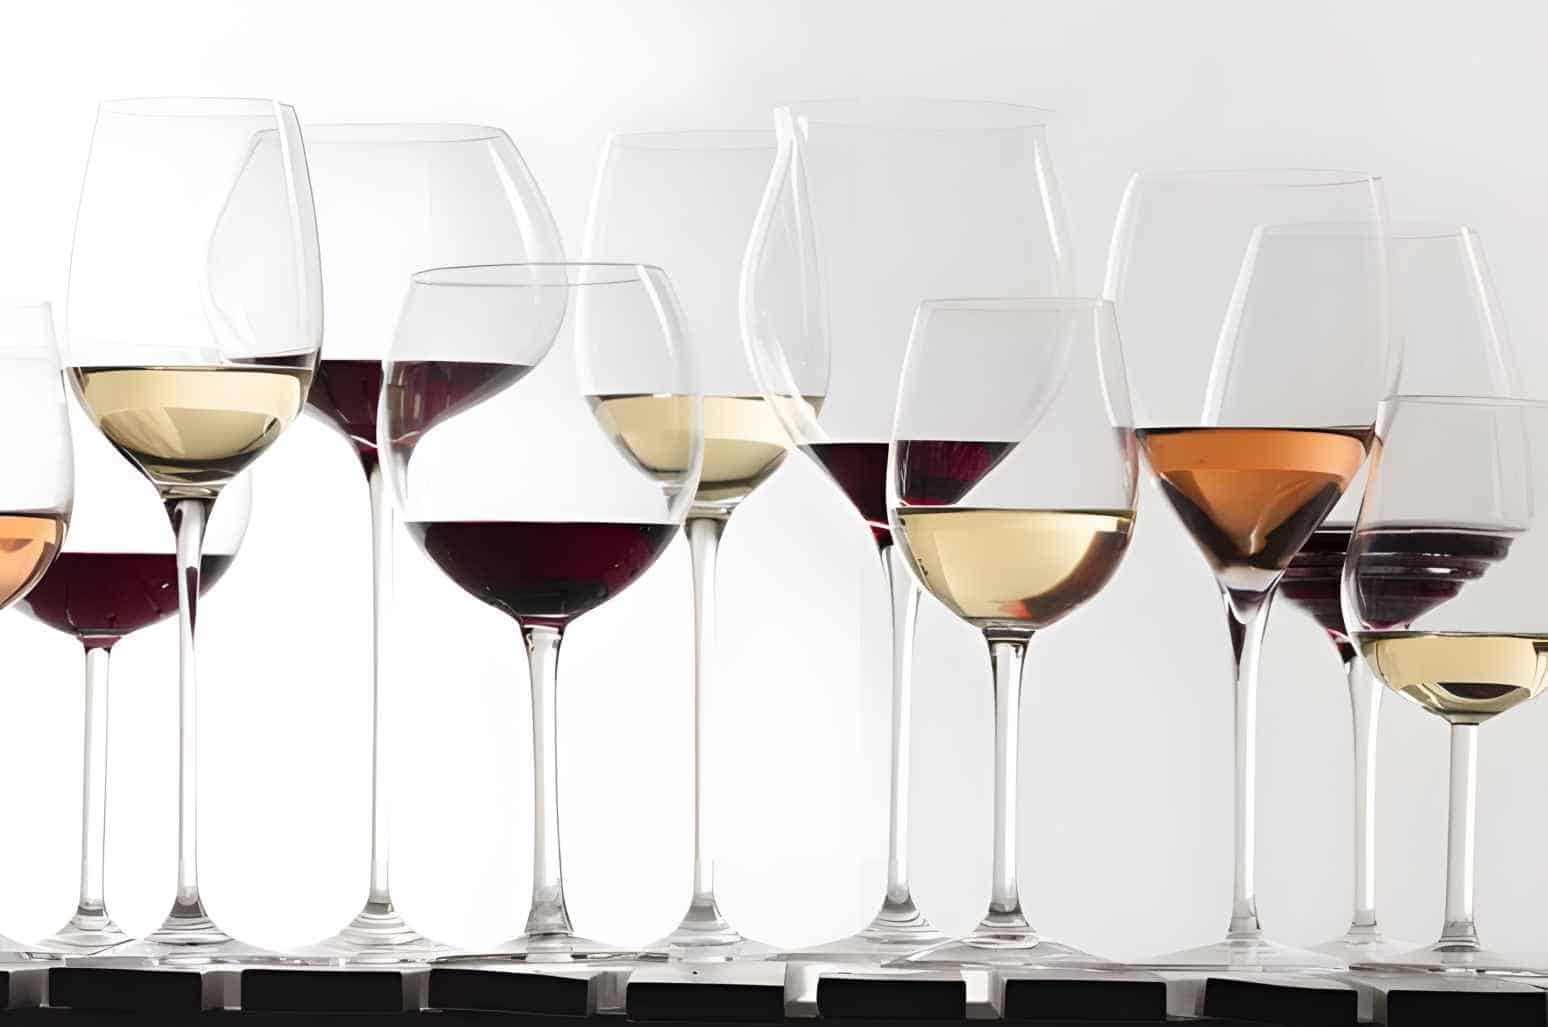 Common Types of Wine Glasses